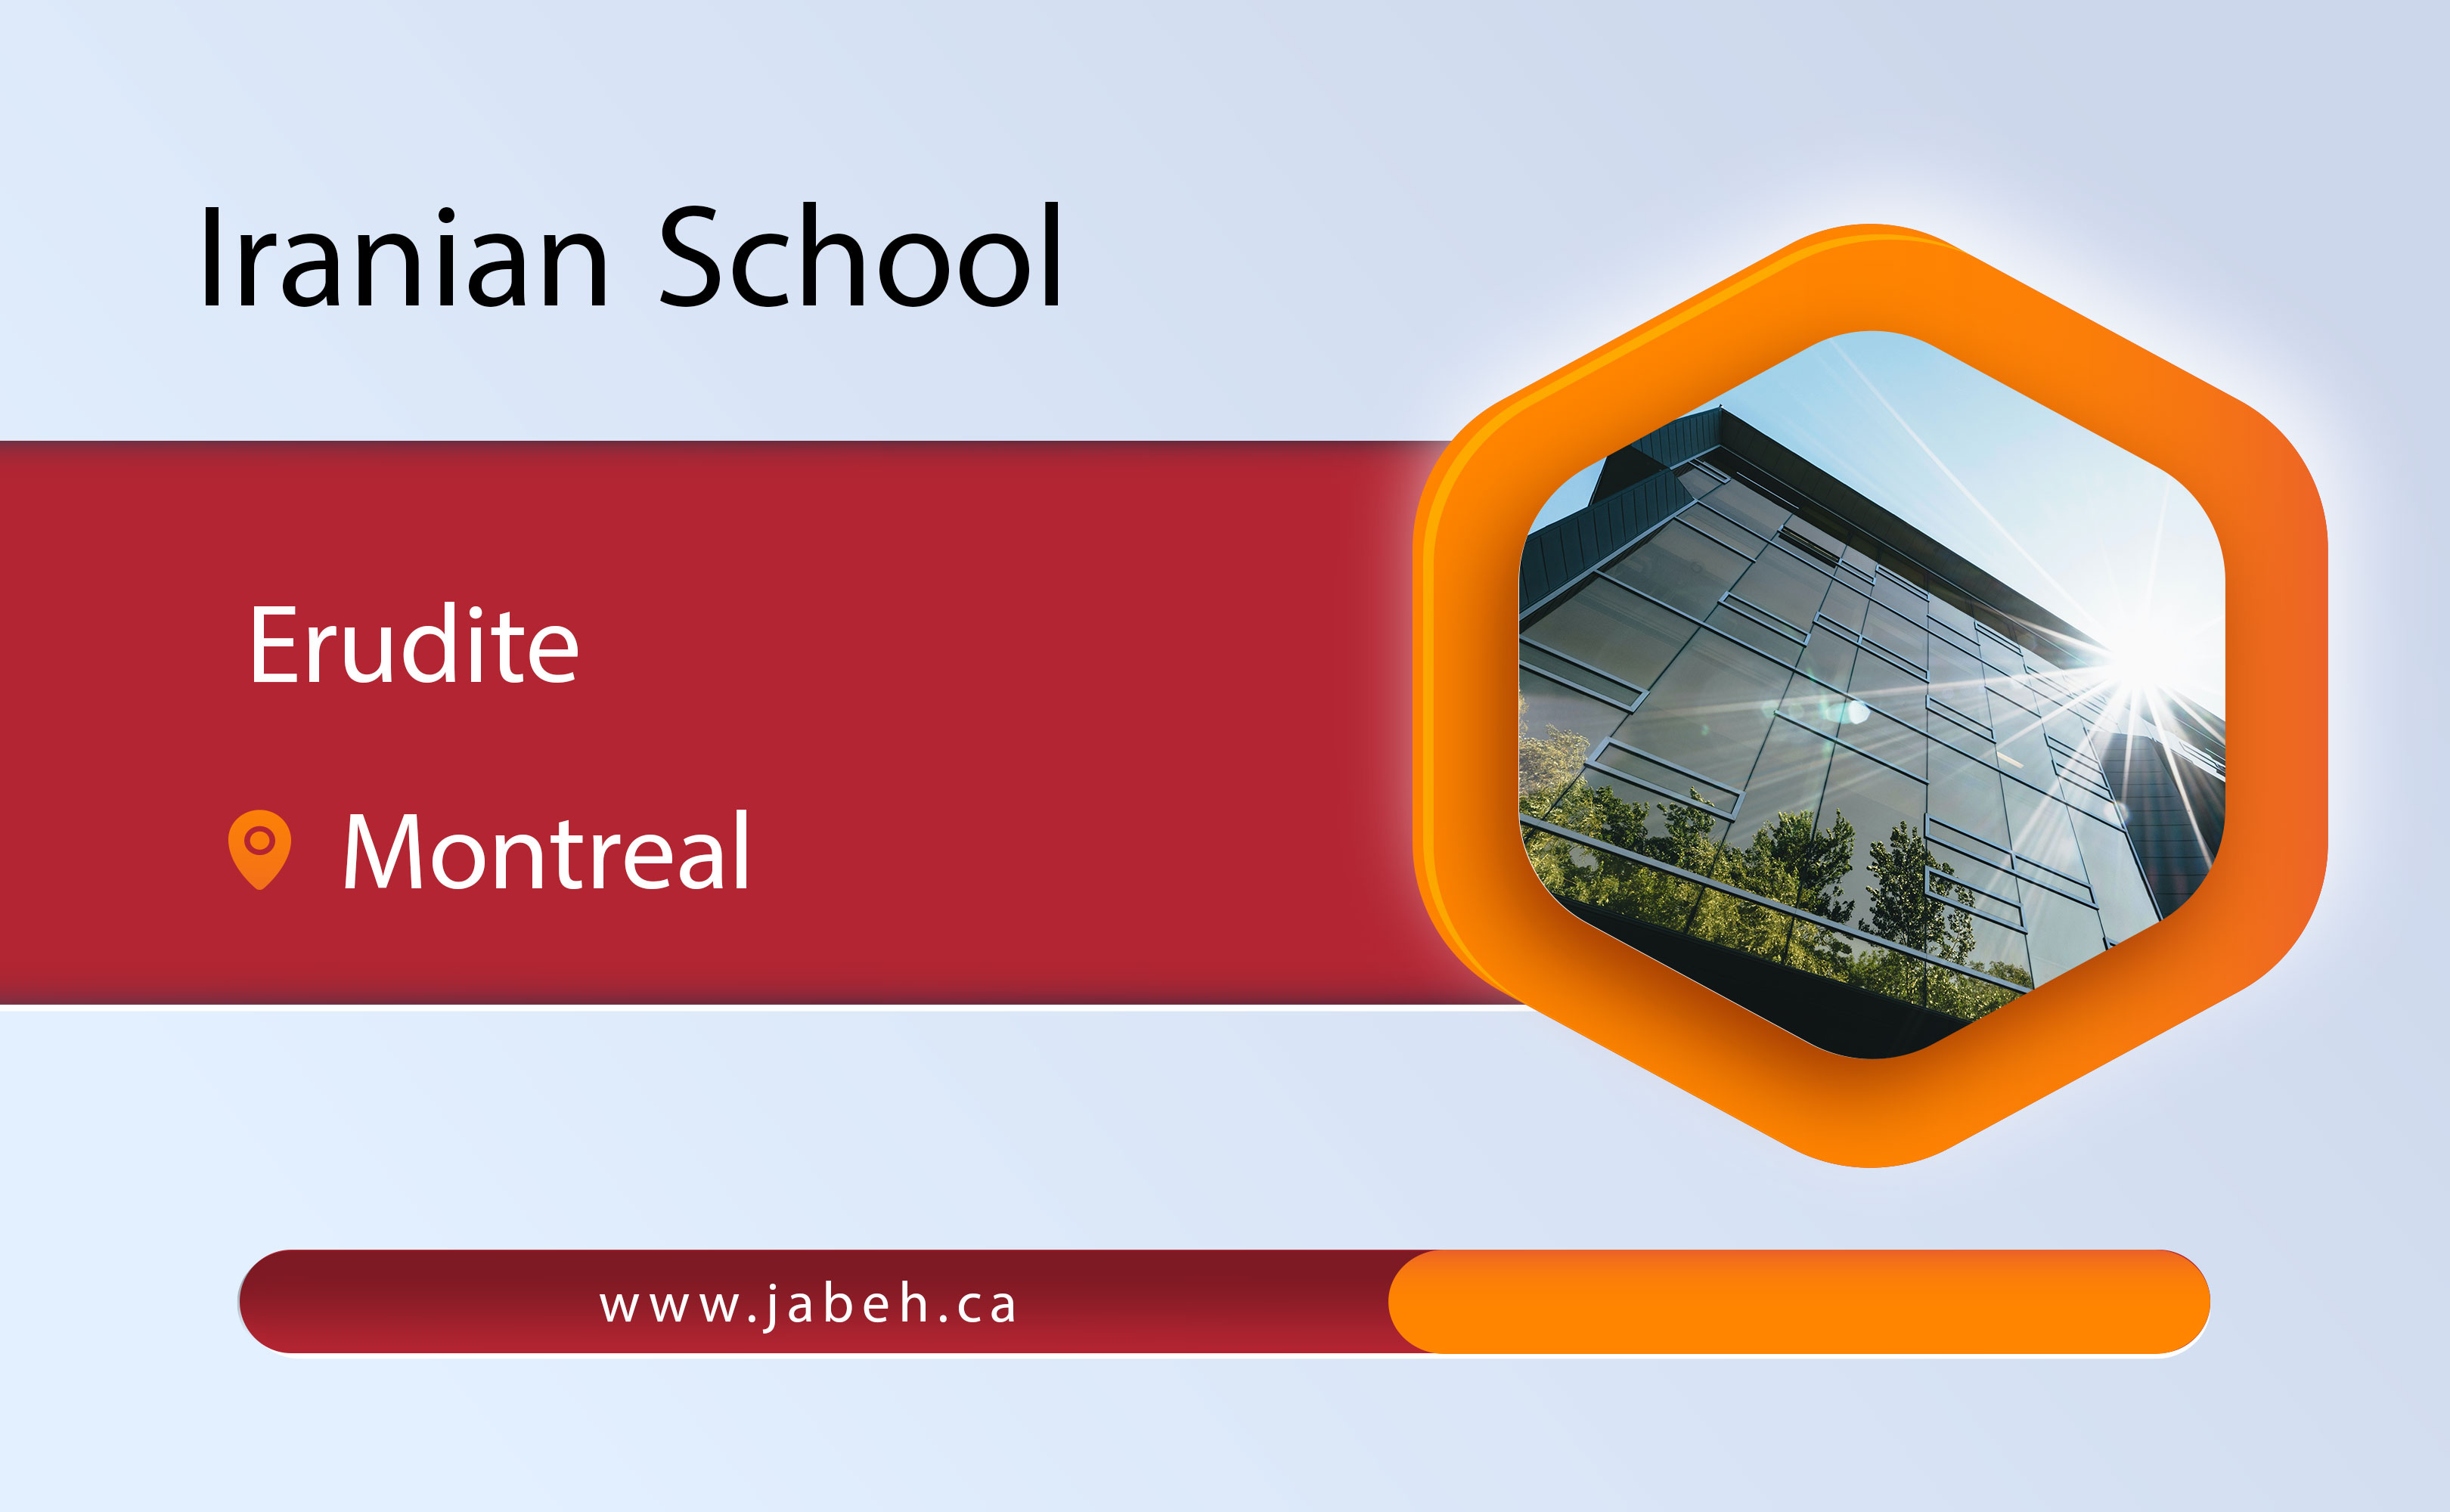 Arudit Iranian School in Montreal